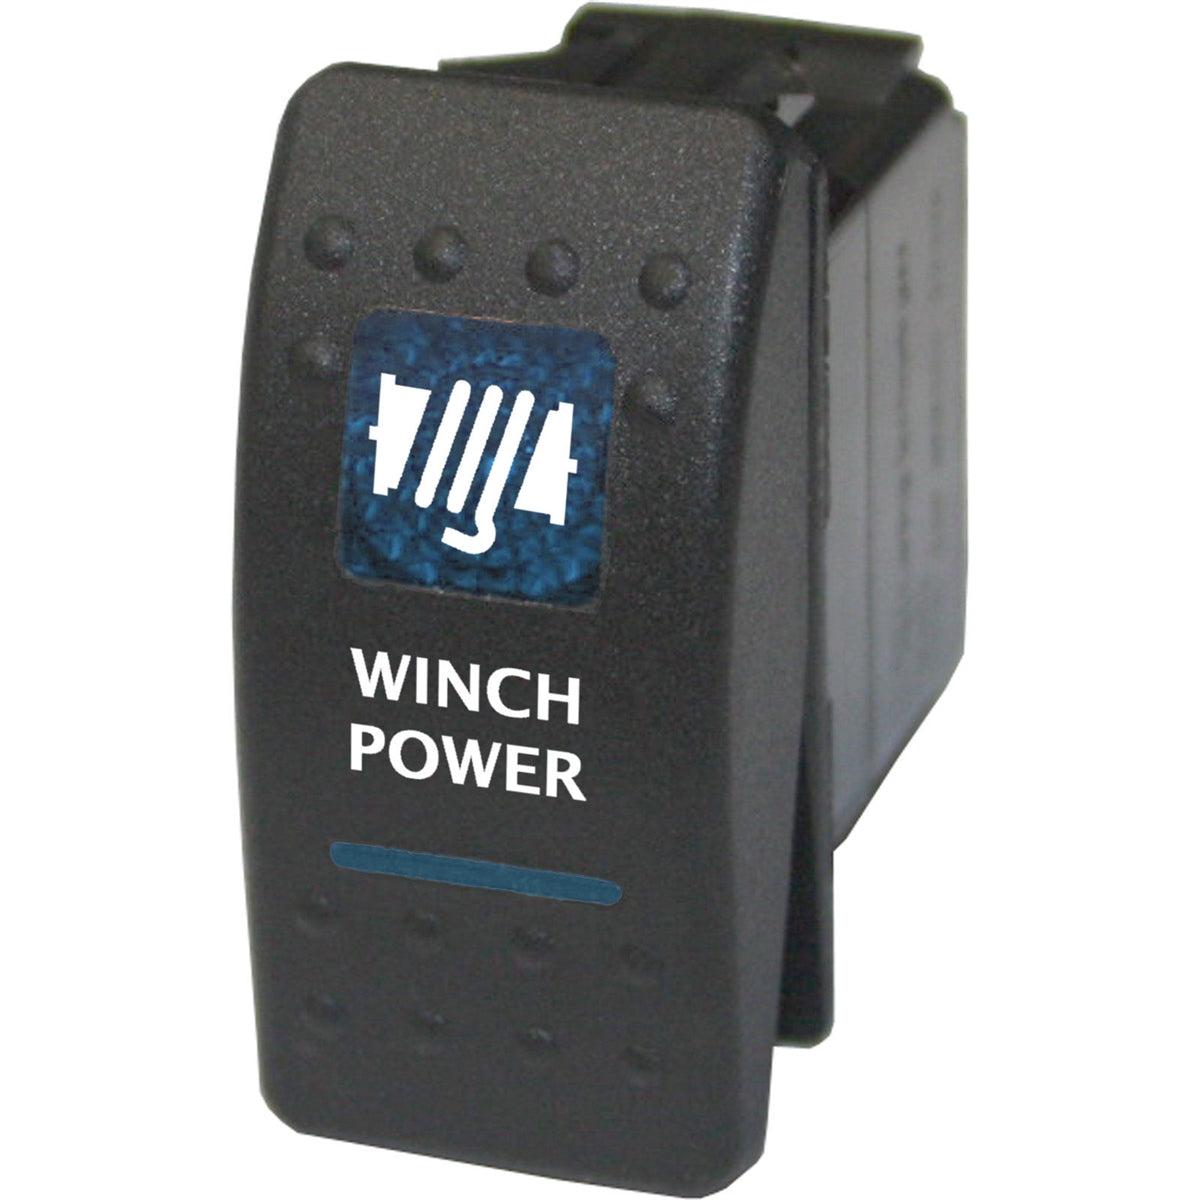 Winch power rocker switch